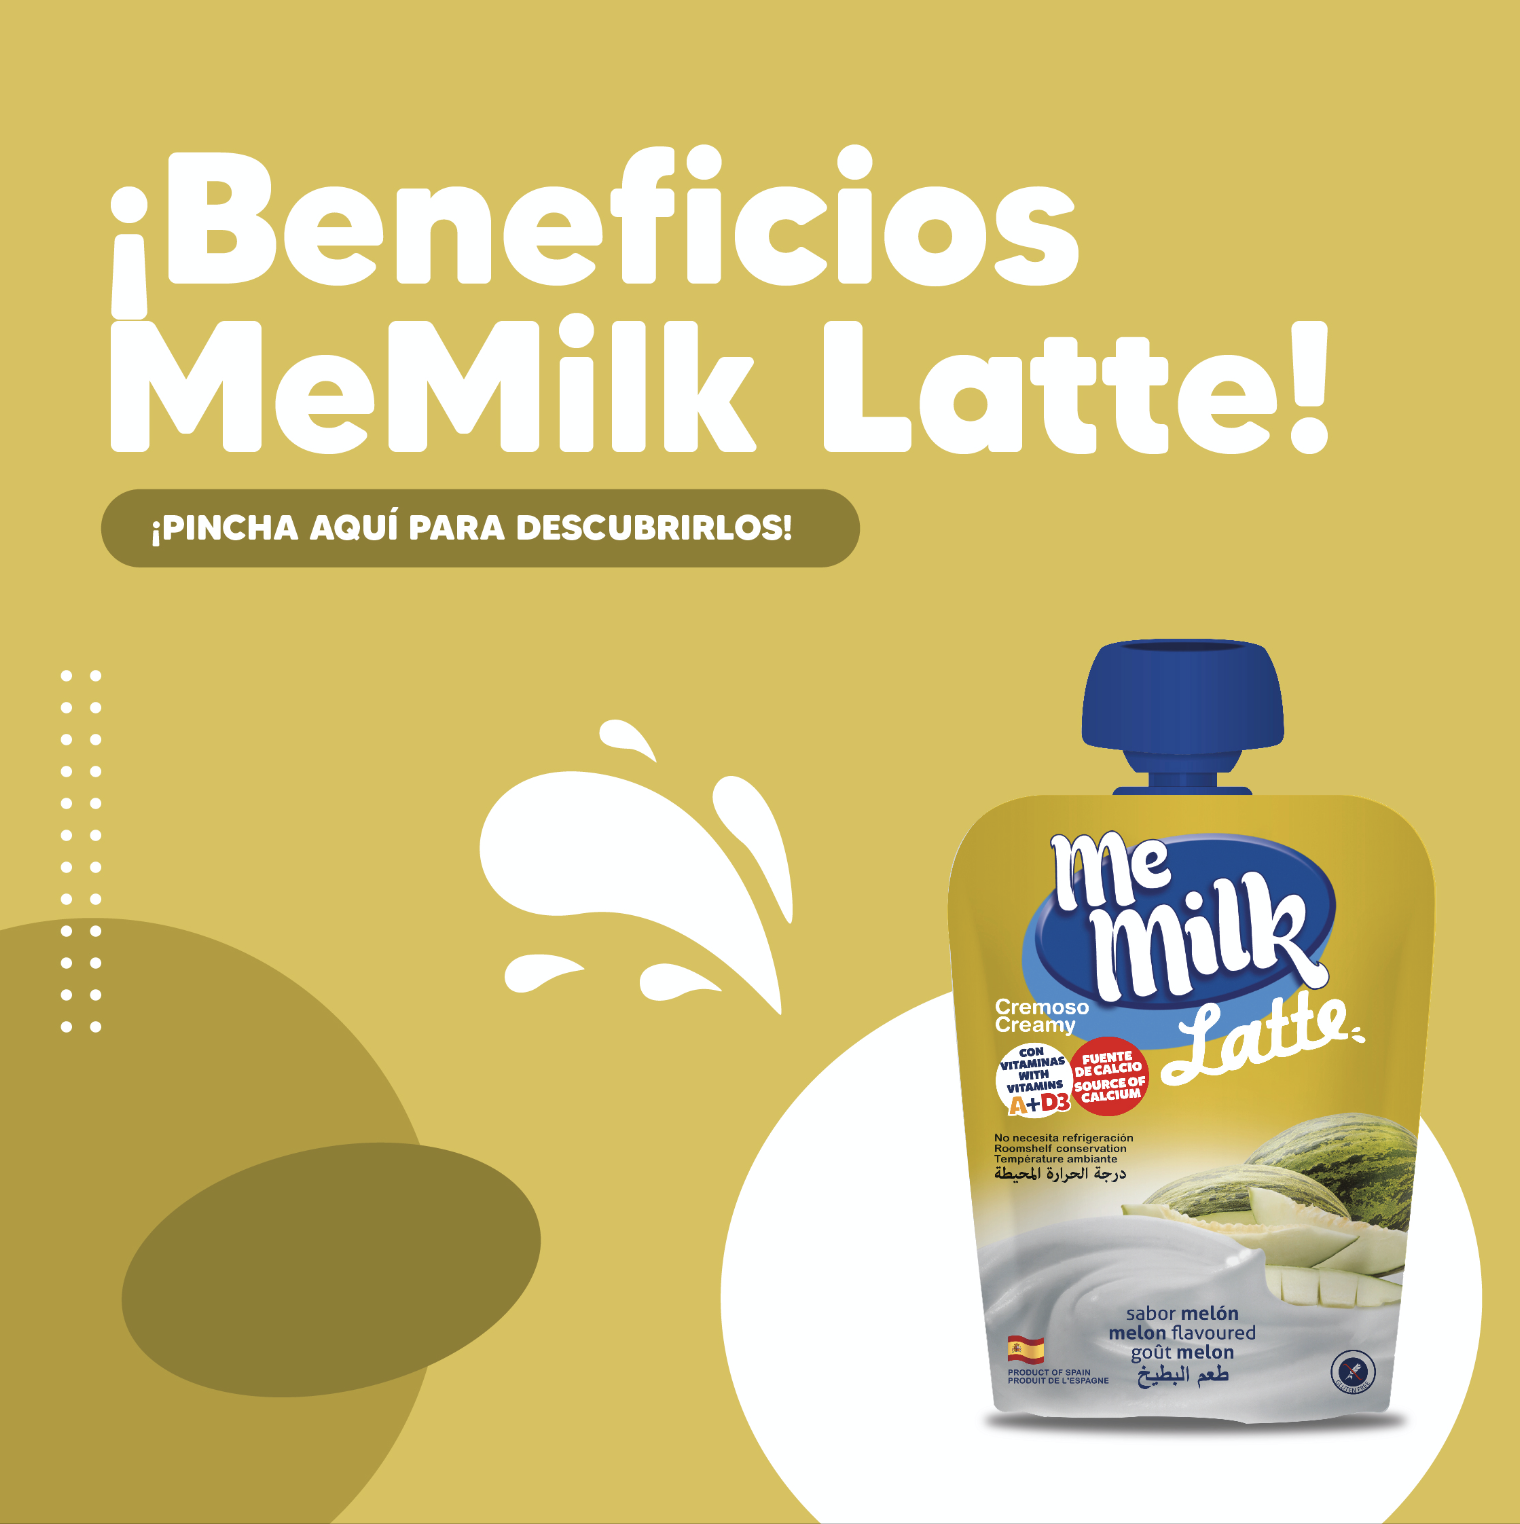 Beneficios de MeMilk Latte